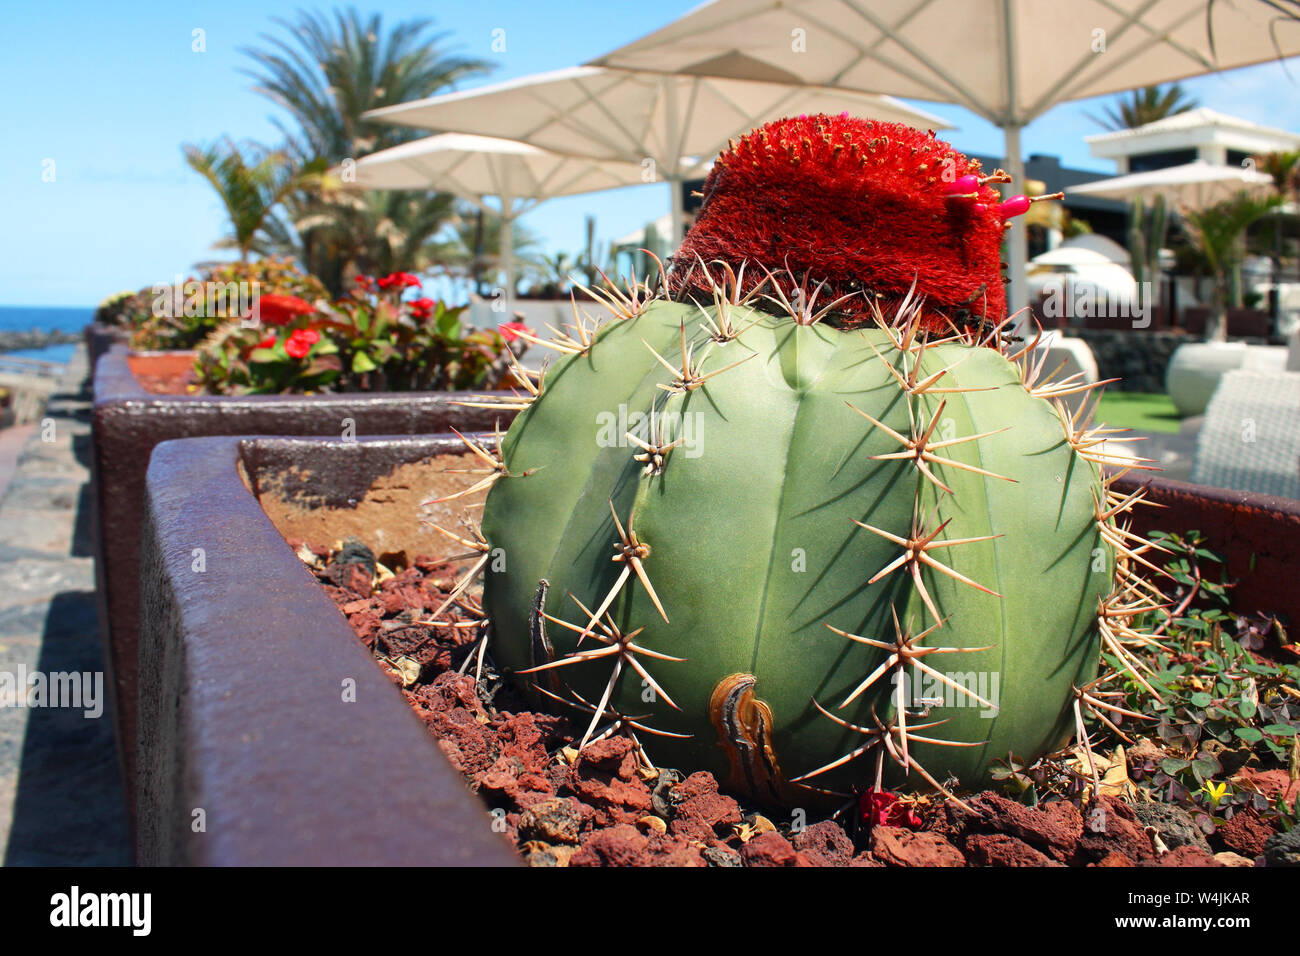 Schöne und bunte runder Kaktus mit Dornen in der Blüte der leuchtend rote Farbe mit einem Marine im Hintergrund Stockfoto